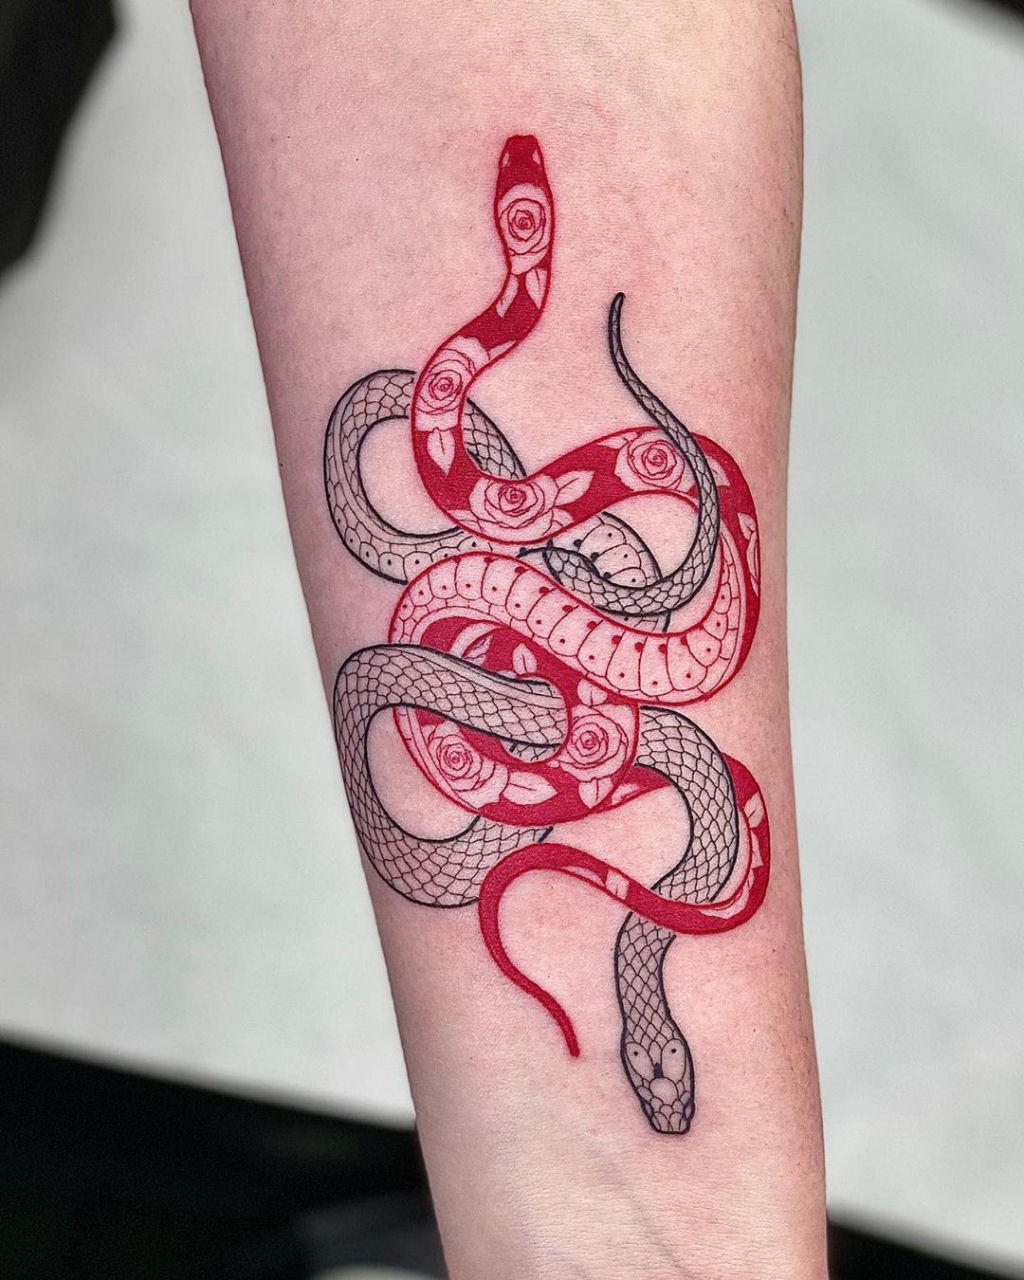 Tatuagens viperinas com tinta branca e preta, por Mirko Sata 20